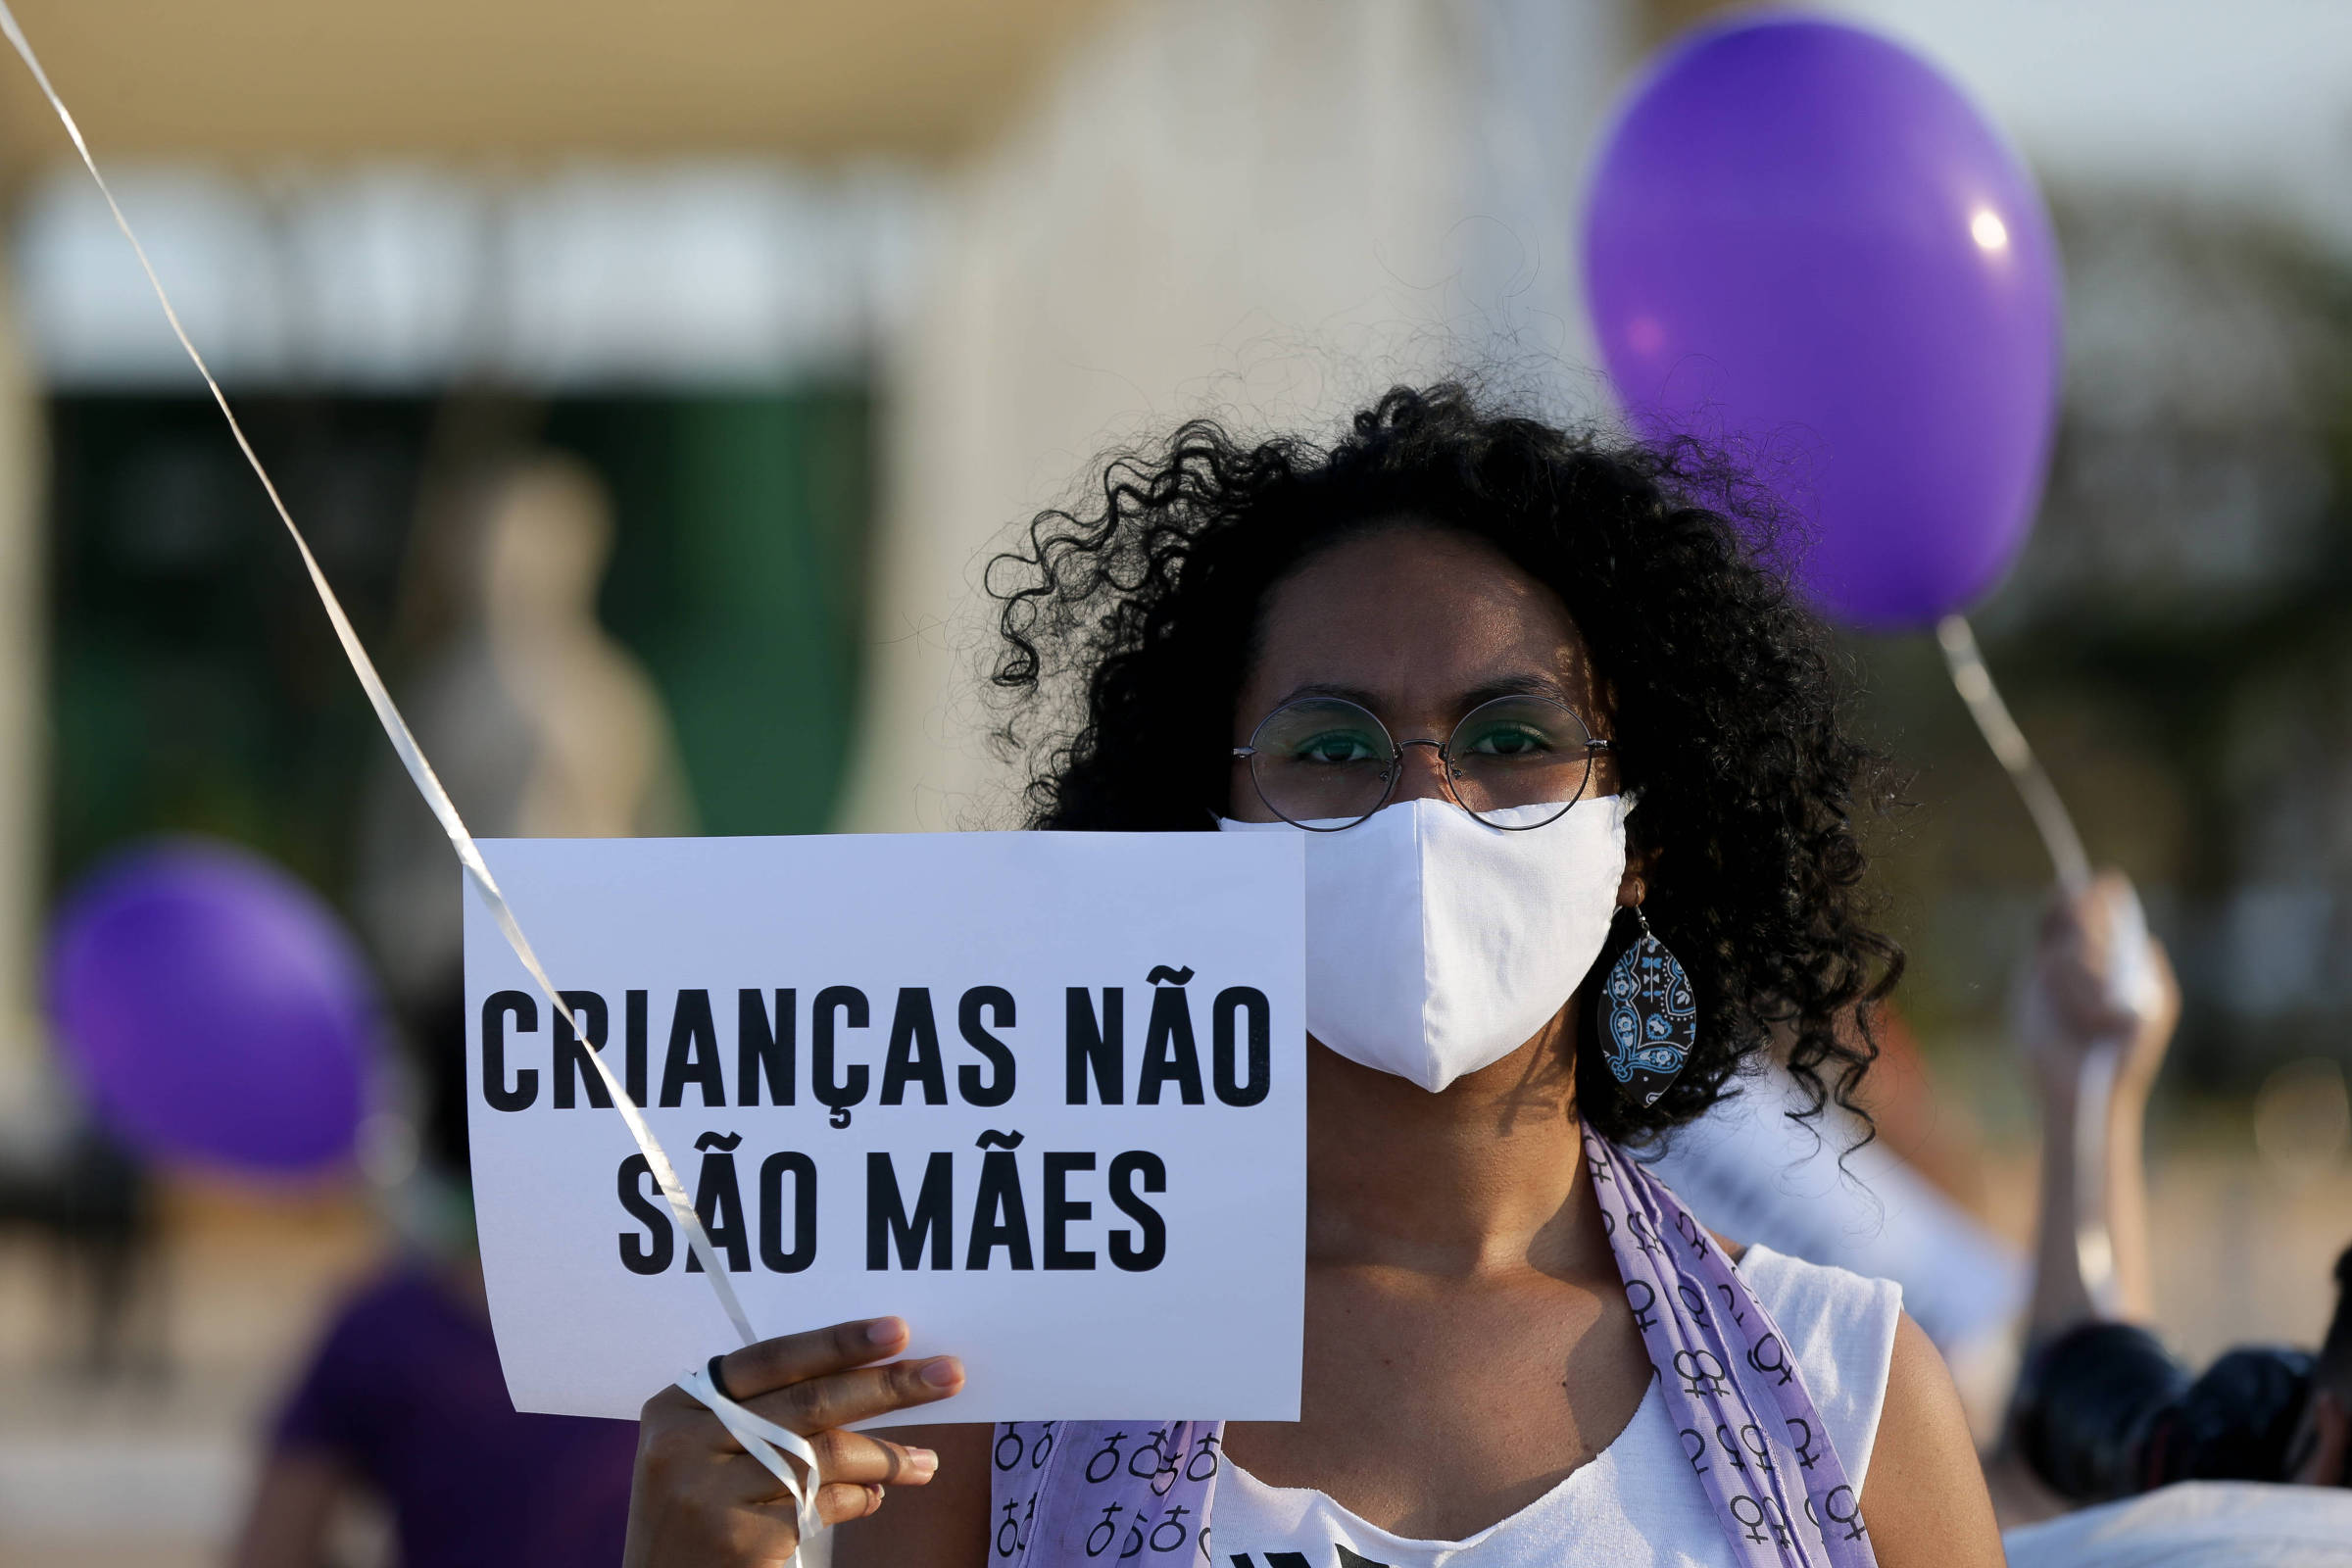 Menina de 11 anos engravida pela segunda vez após violência sexual, Brasil